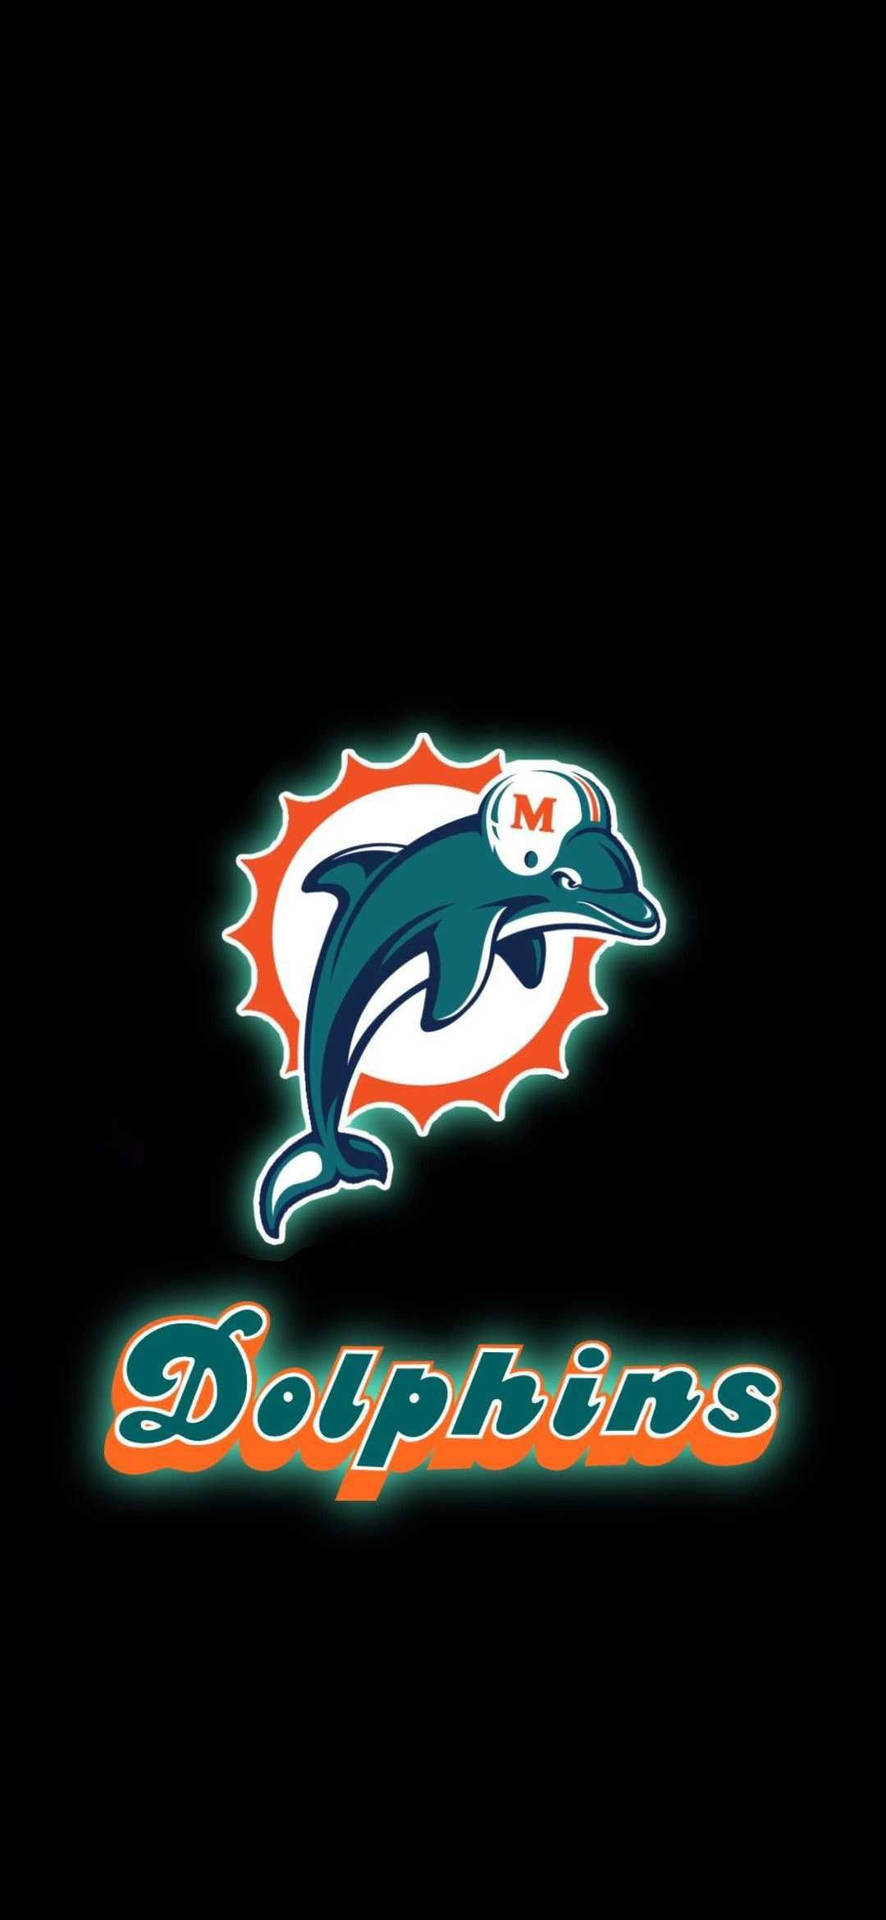 Esaltala Tua Passione E Mostra Il Tuo Sostegno Per I Miami Dolphins Con Questo Sfondo Per Iphone Dei Miami Dolphins! Sfondo